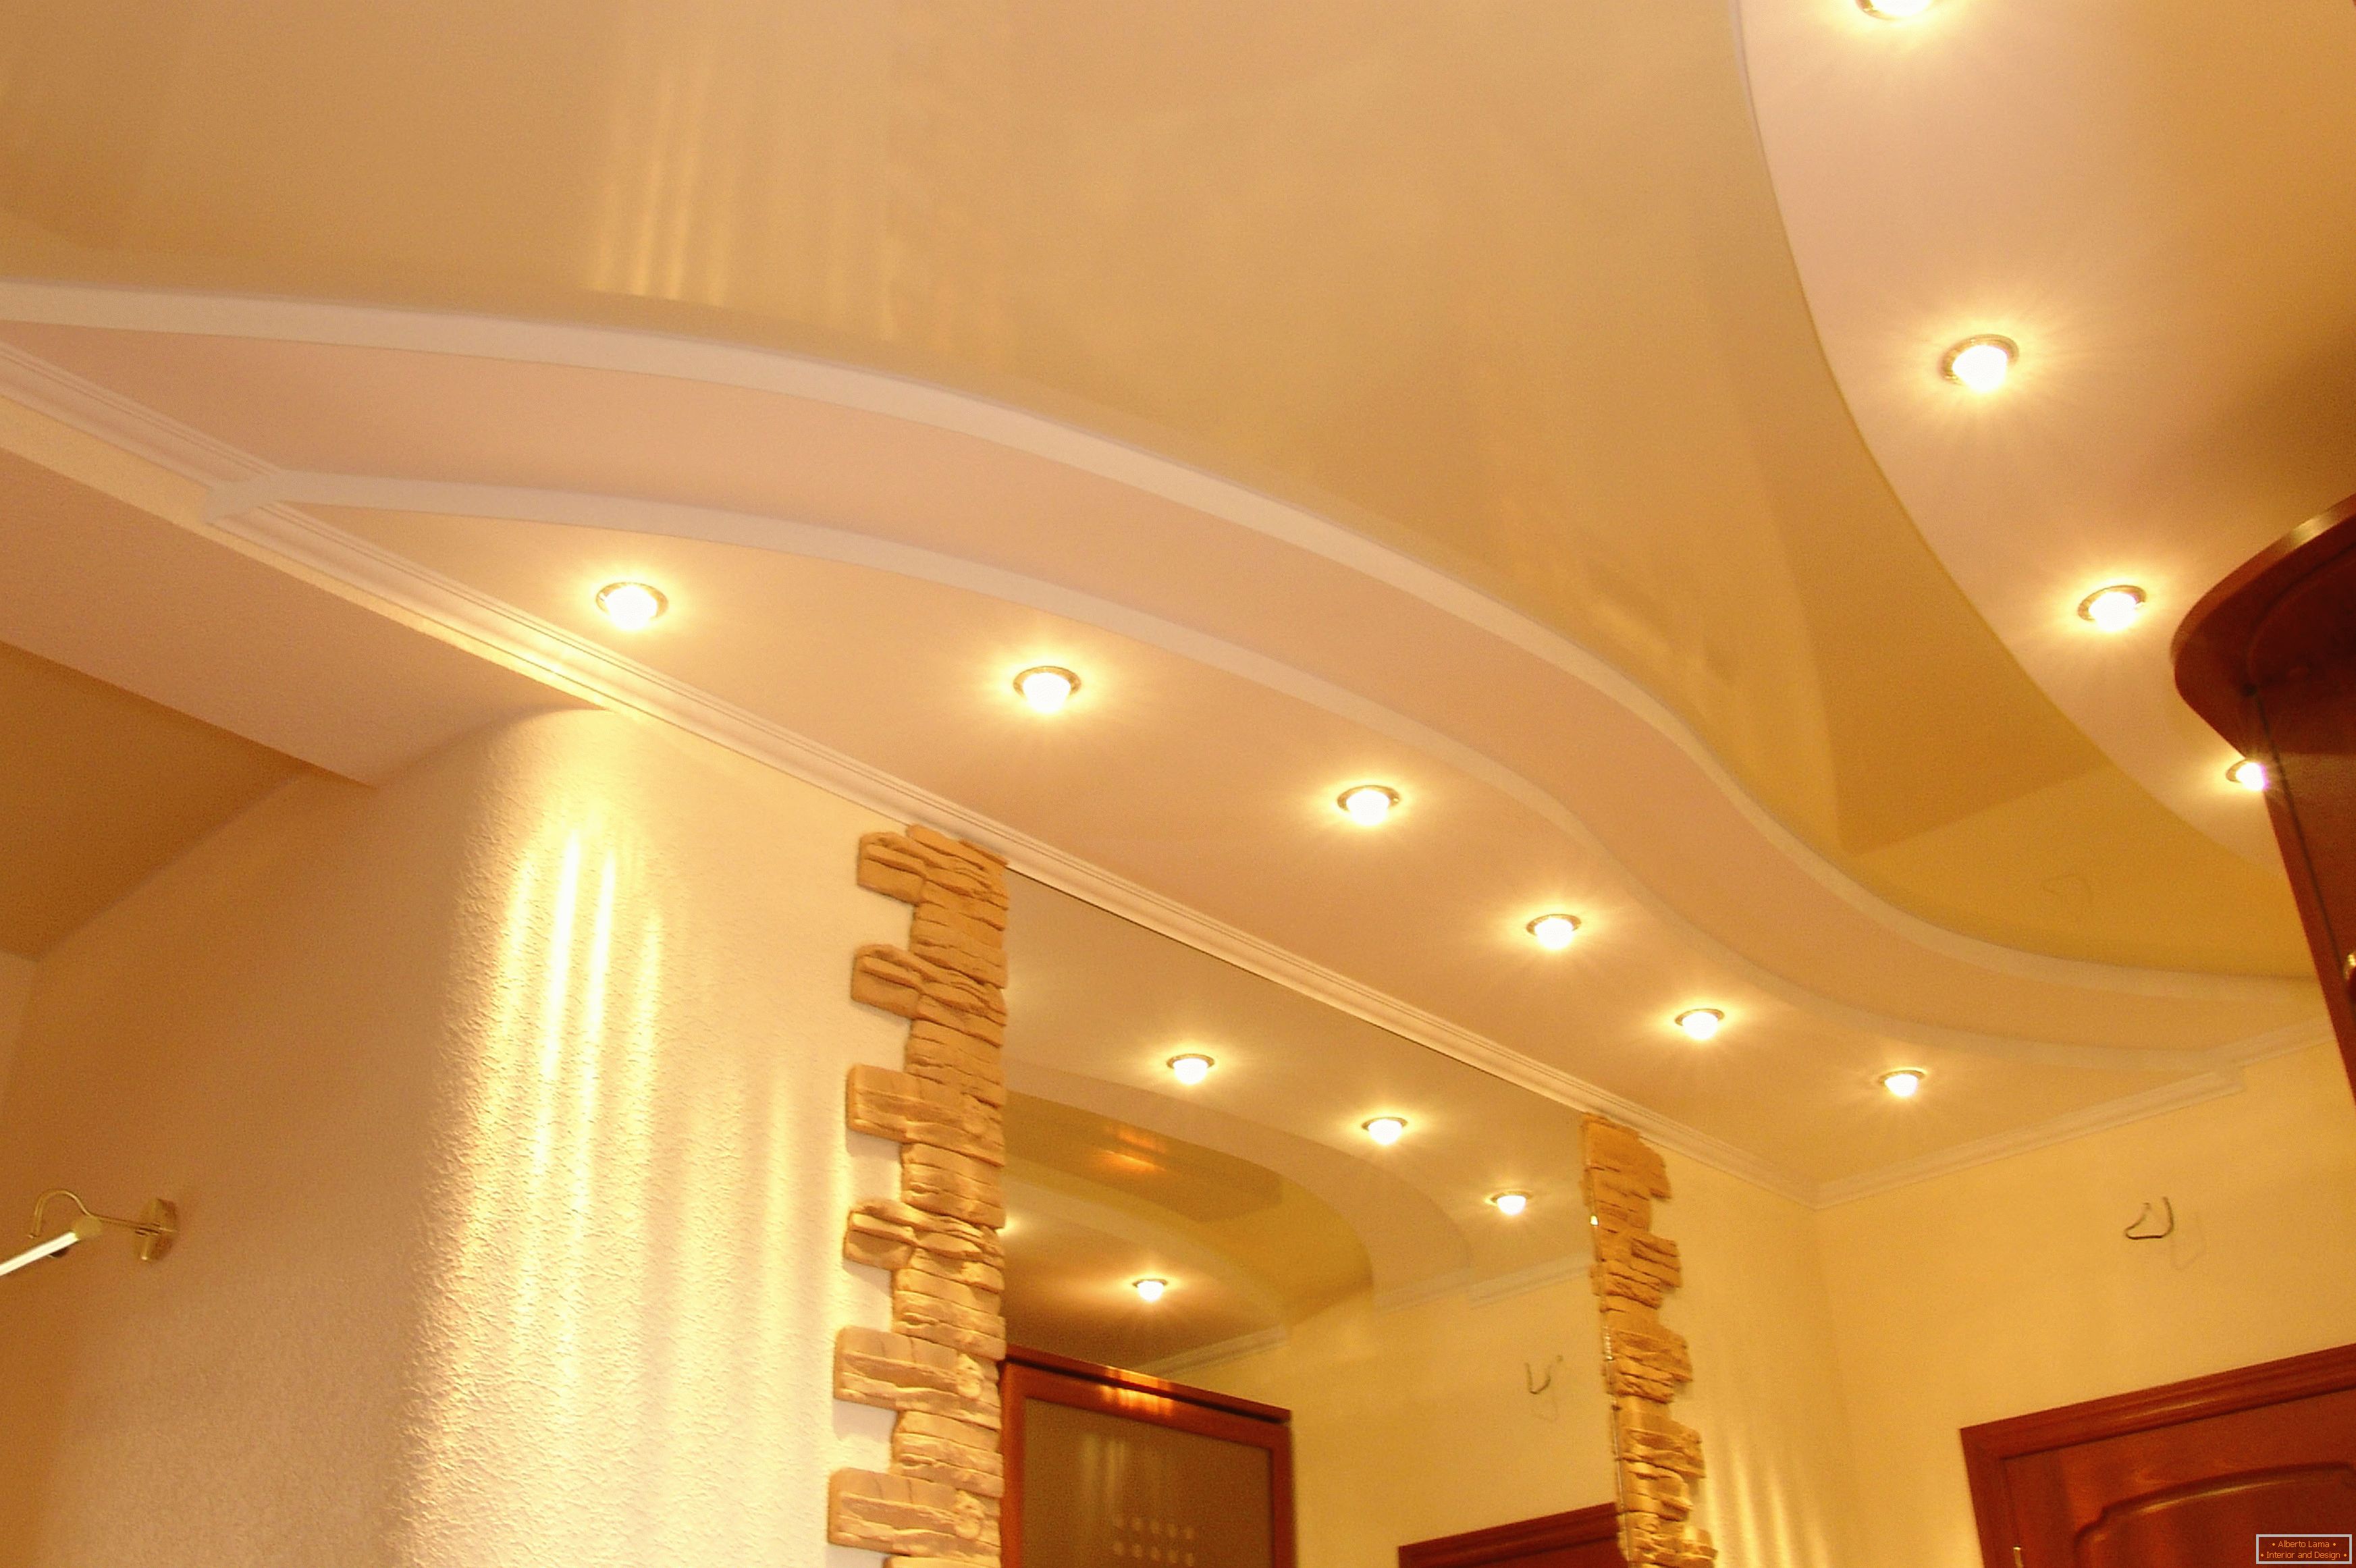 Pravilno ukrašen tavan u hodniku. Točno osvetljenje - najprihvatljivija opcija za strop plafona PVC.